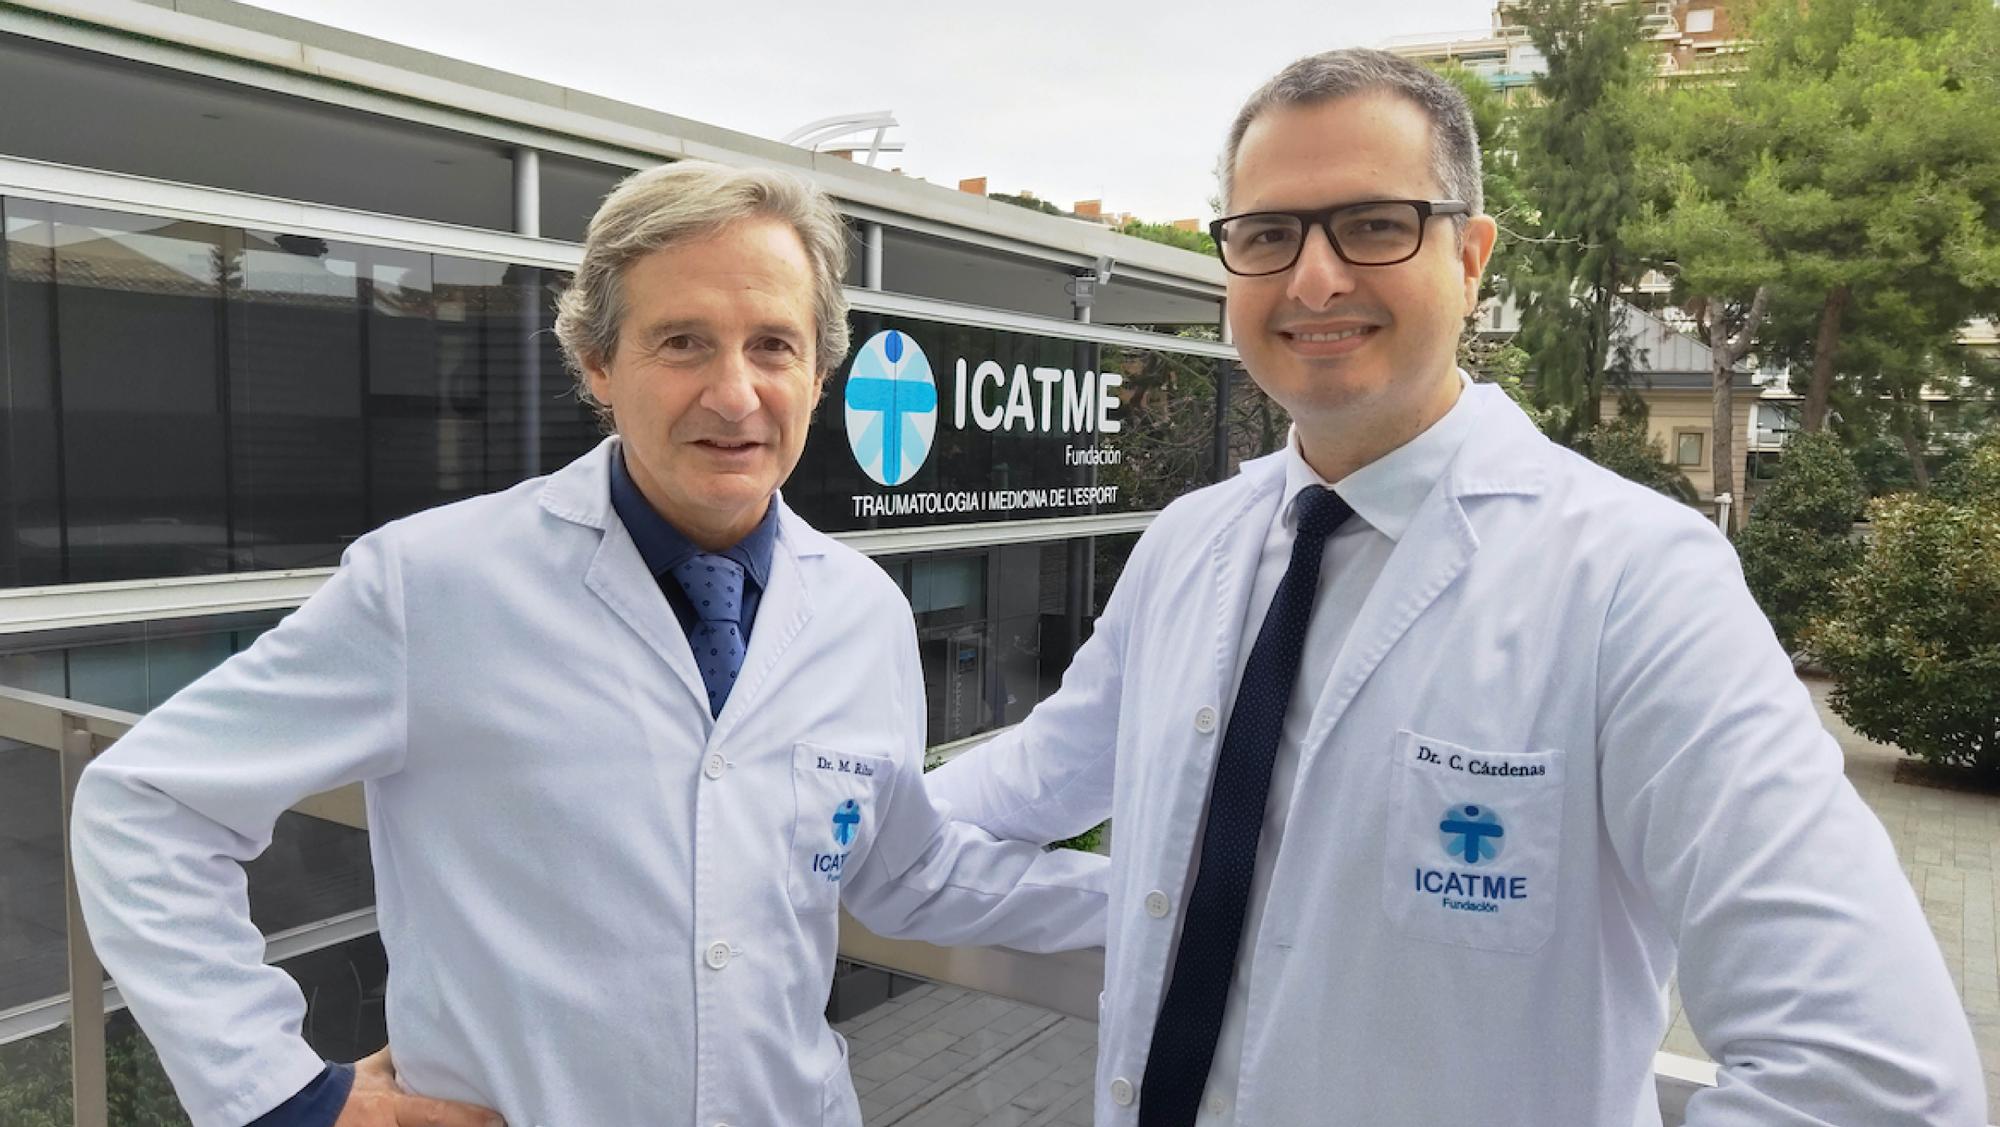 Los doctores Manuel Ribas y Carlomagno Cardenas, de la Unidad de Cadera del ICATME